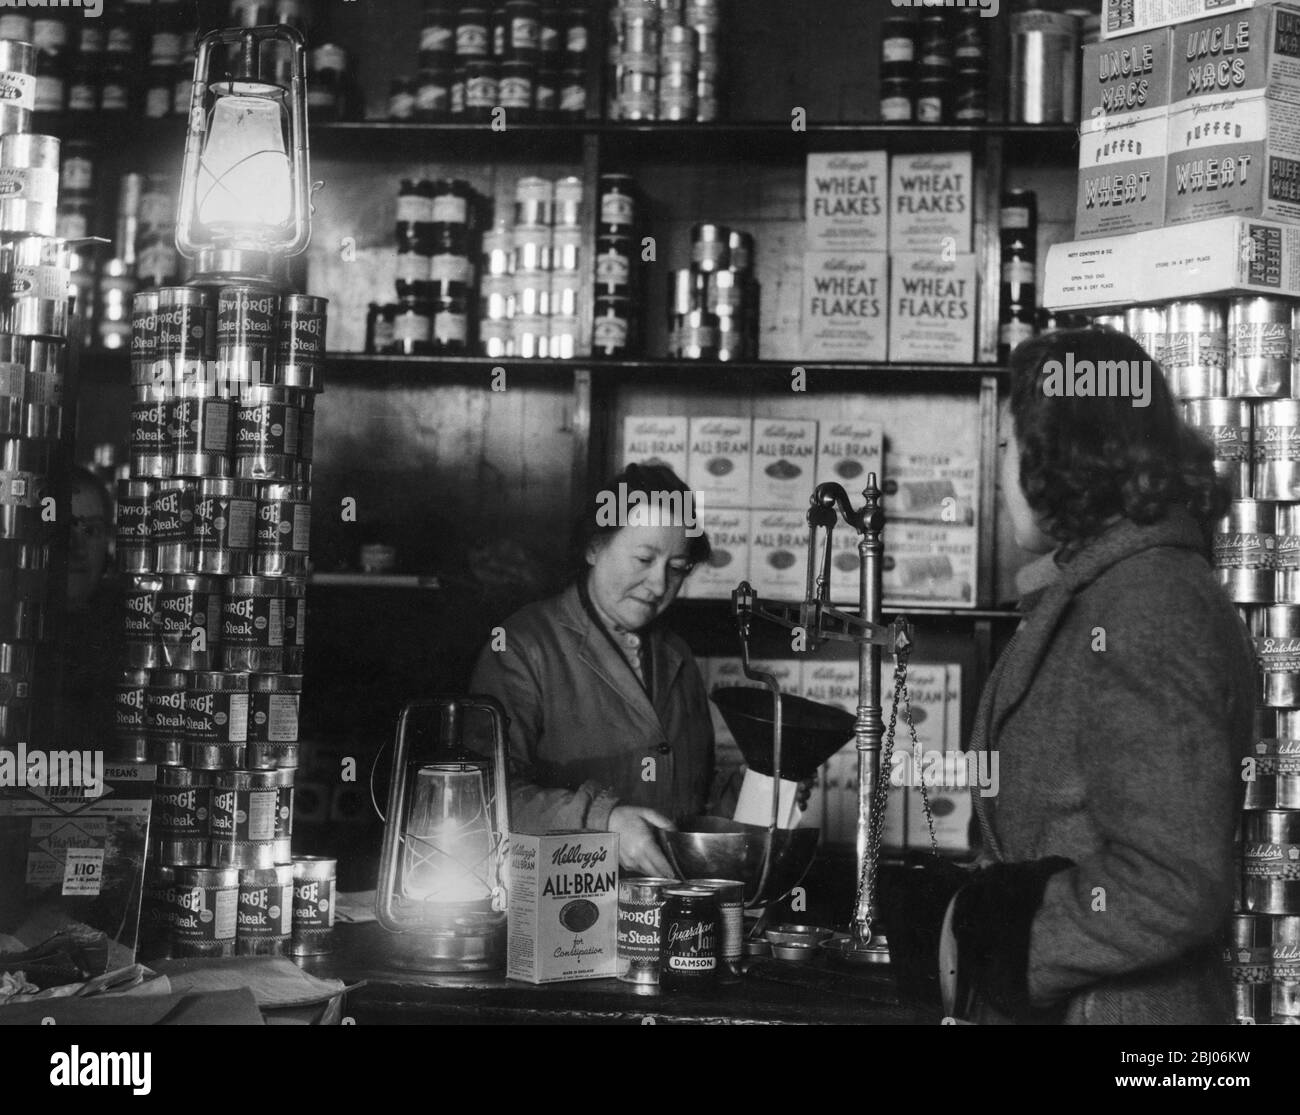 Kraftstoffkrise von 1947: - Londoner Büros und Geschäfte, als die Lichter als Folge der Stromausfälle ausgingen, mit unterschiedlichen Arten der Beleuchtung weitergeführt. Foto zeigt Shopping im Licht von Hurrikan-Lampen in einem Lebensmittelgeschäft in Blackfriars, London. E.C. am 10. Februar 1947. - Stockfoto